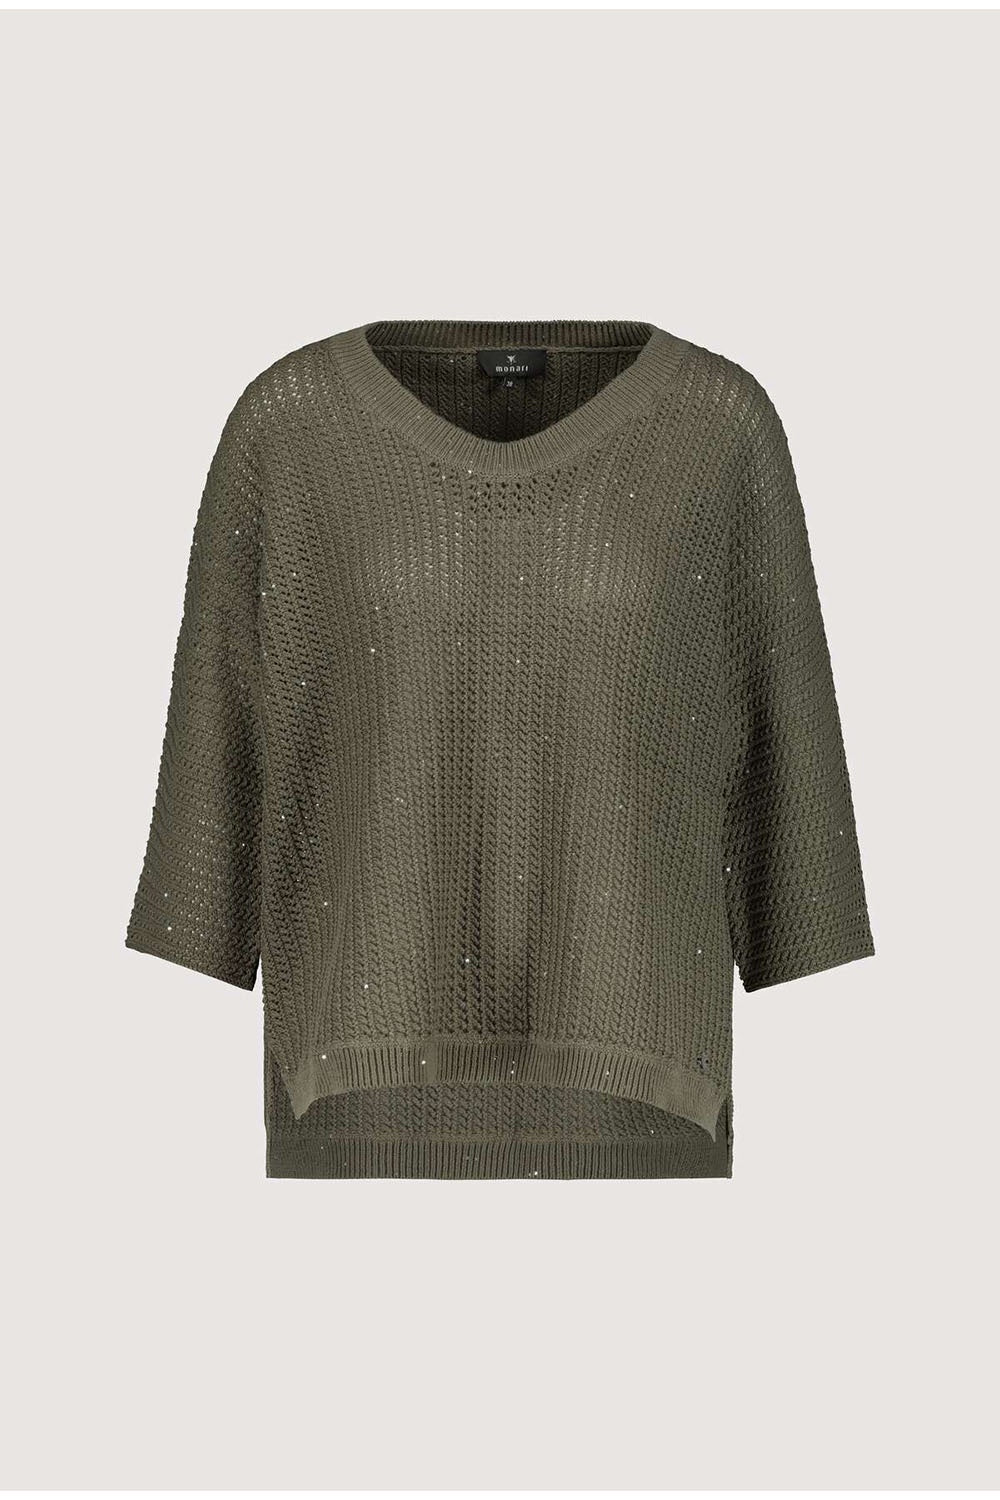 Monari Sequin Sweater M407284